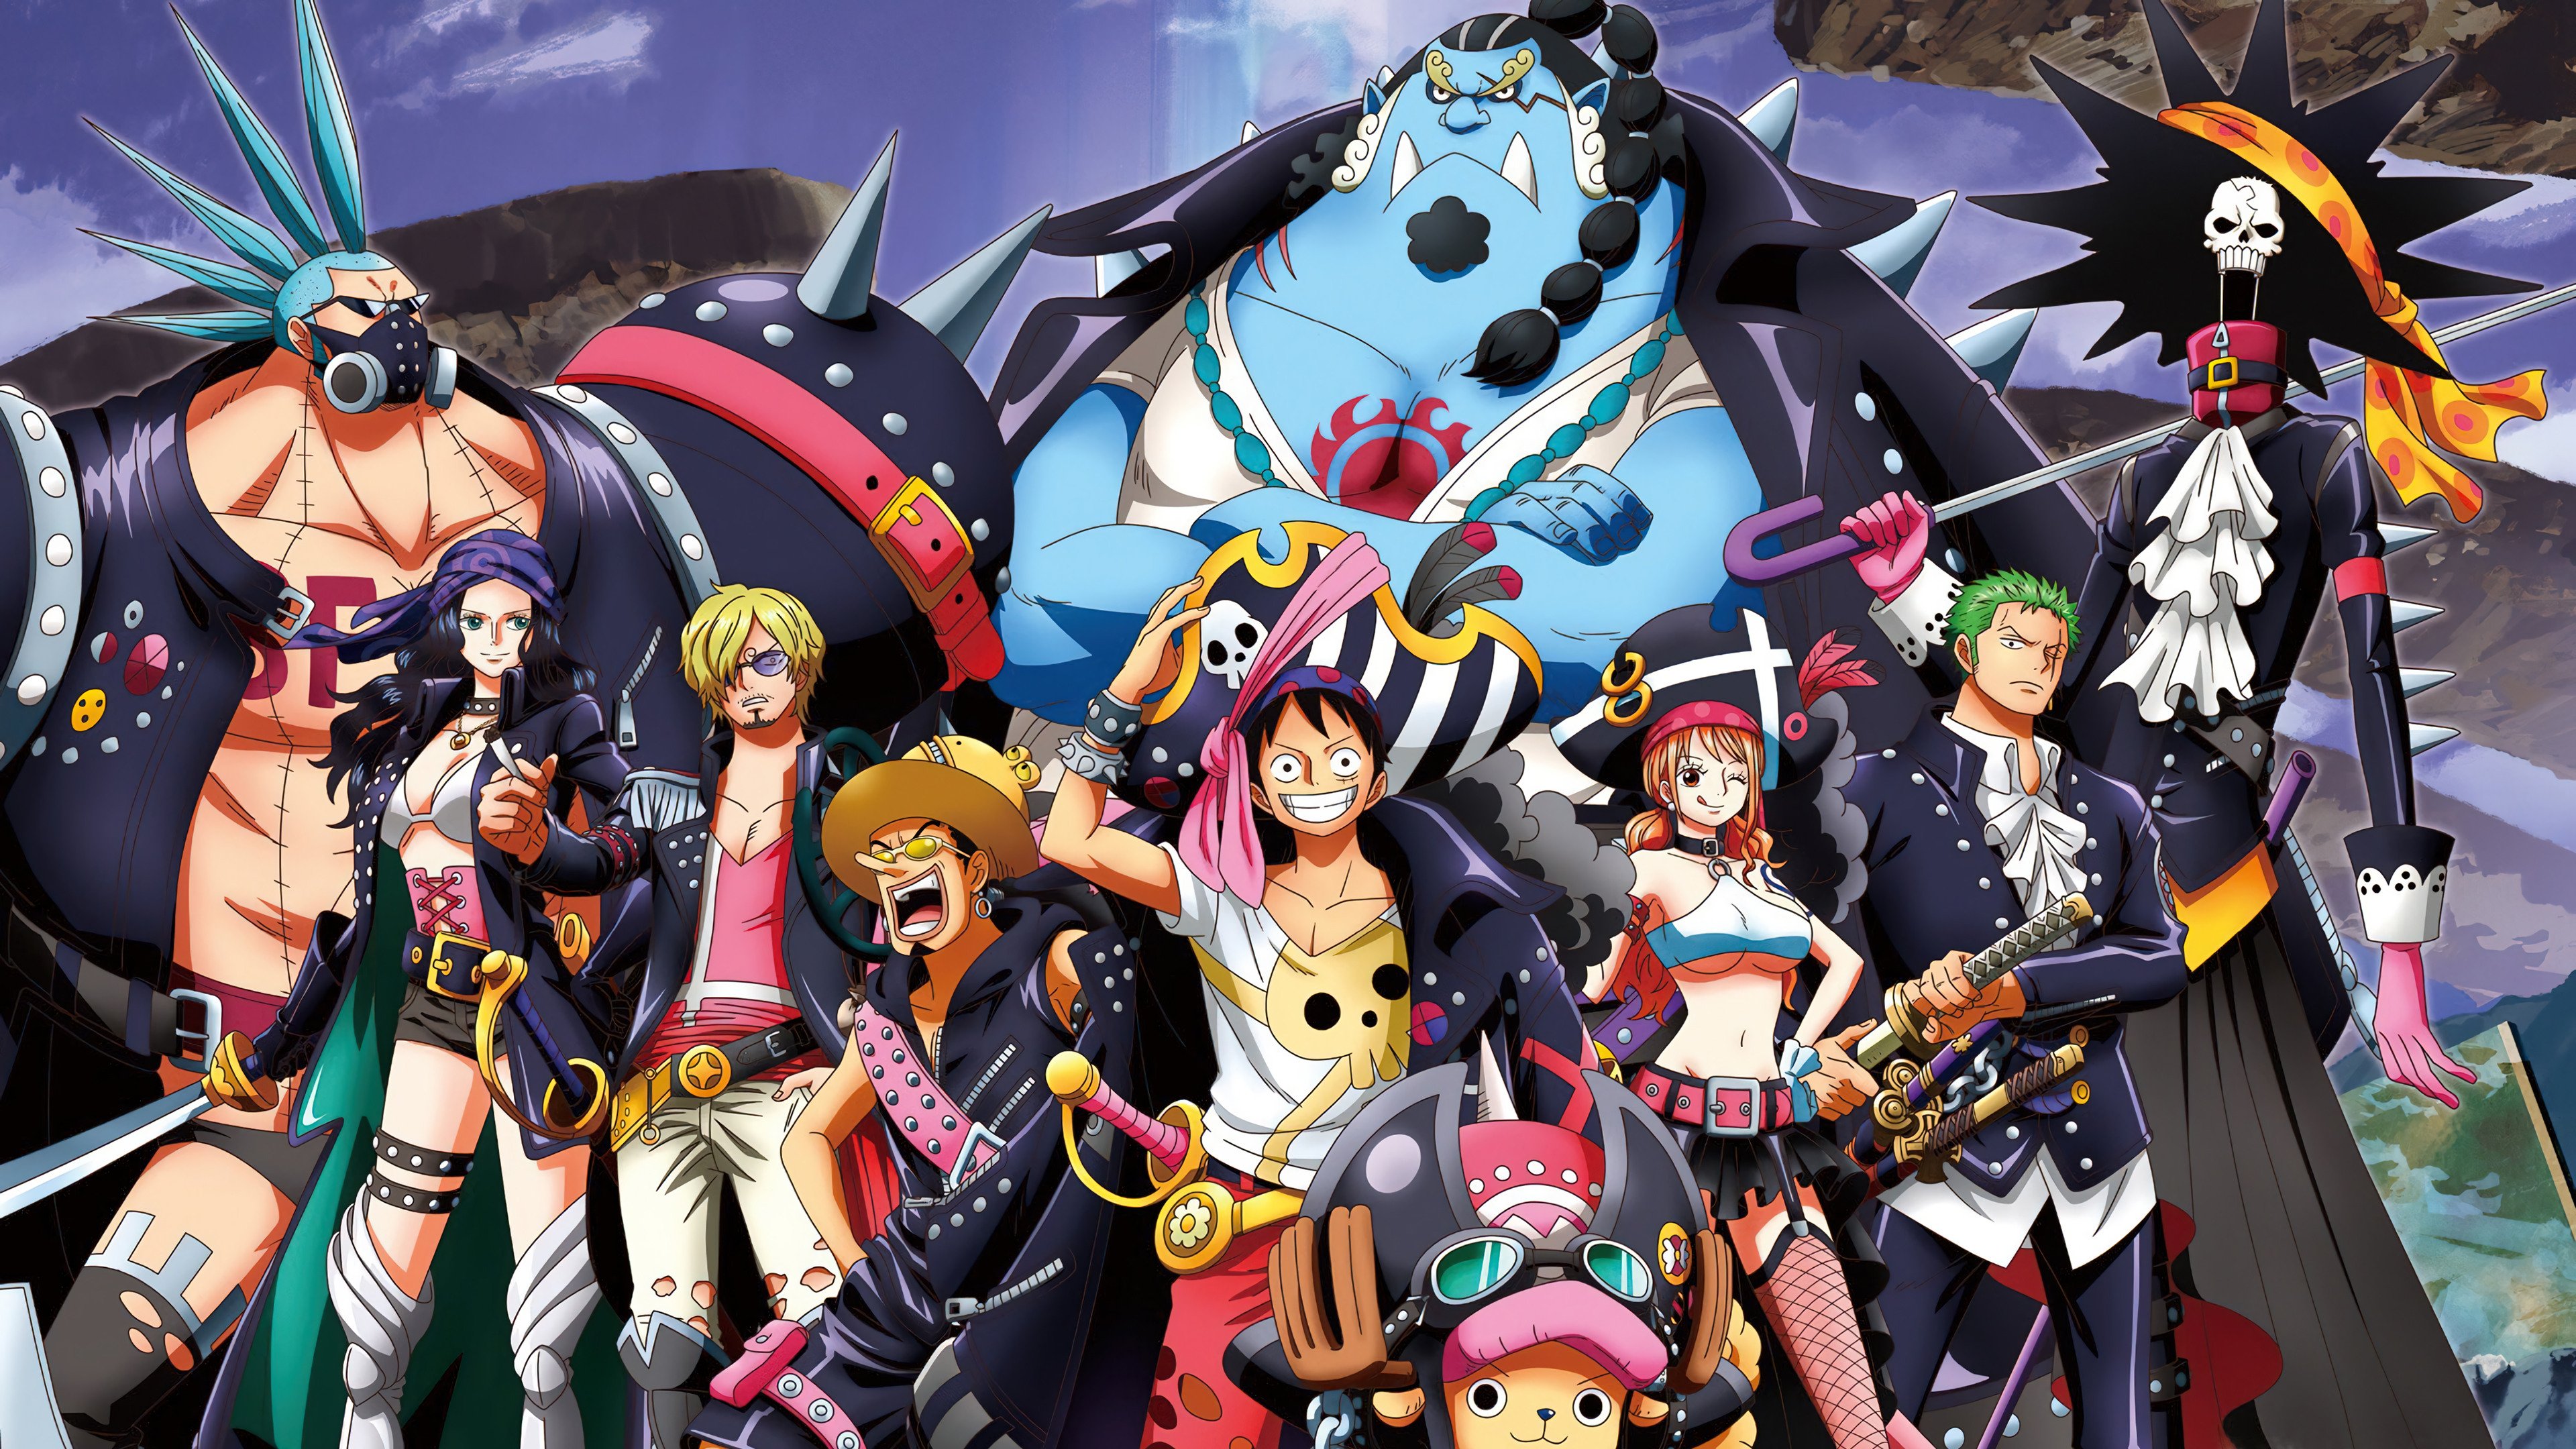 Fondos de pantalla Personajes de One Piece